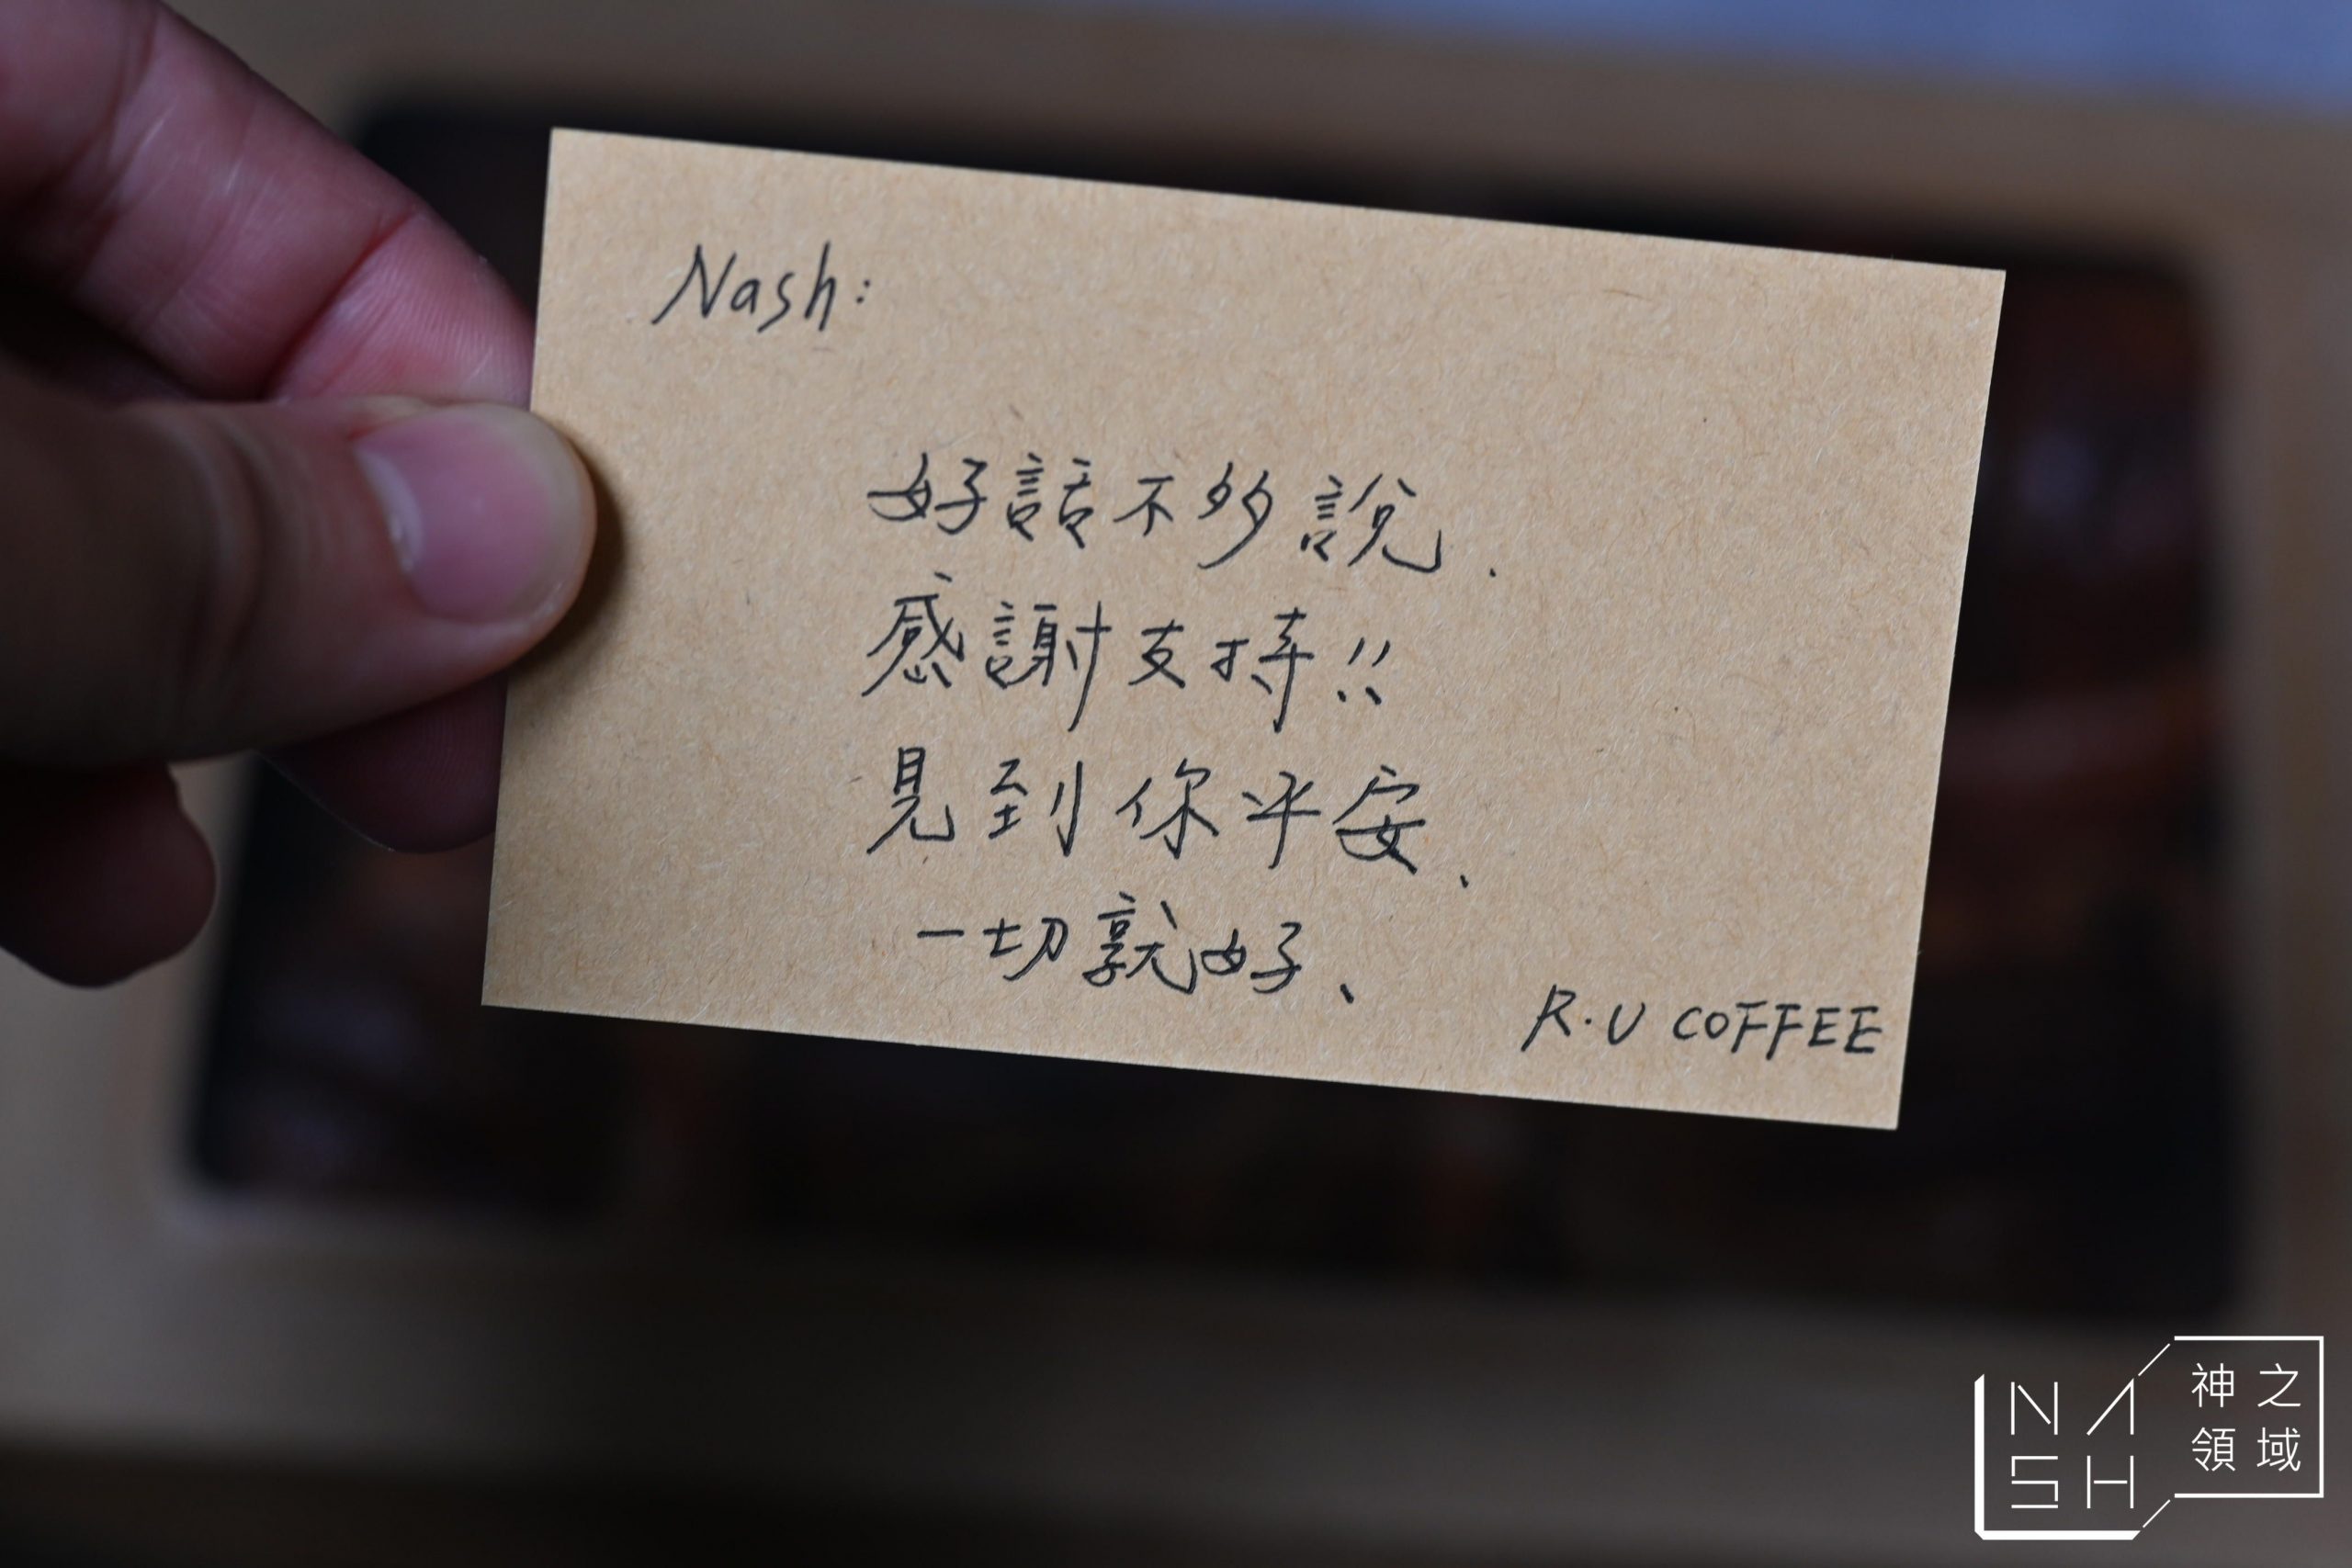 R．U COFFEE